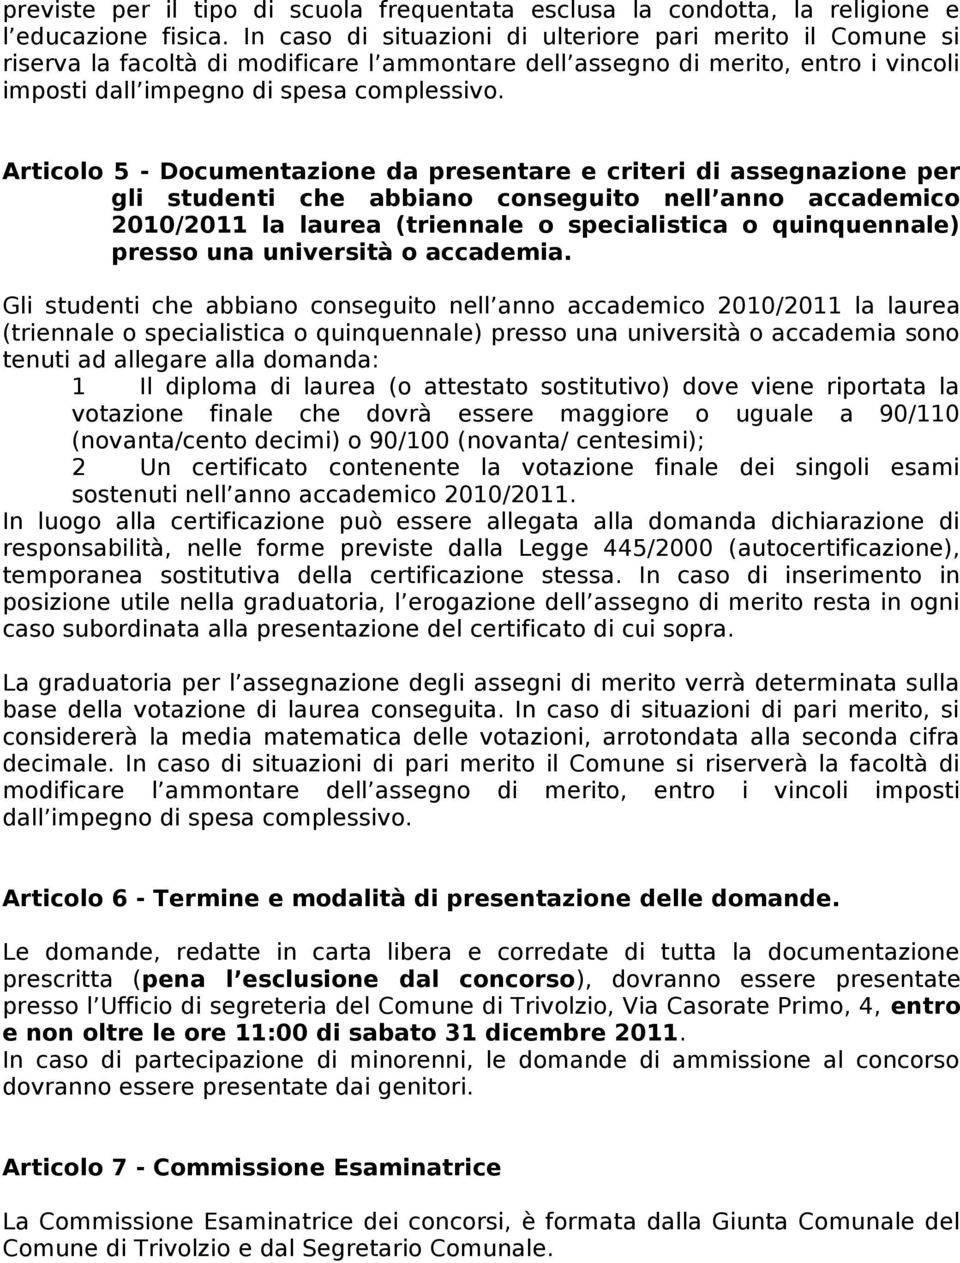 Articolo 5 - Documentazione da presentare e criteri di assegnazione per gli studenti che abbiano conseguito nell anno accademico 2010/2011 la laurea (triennale o specialistica o quinquennale) presso